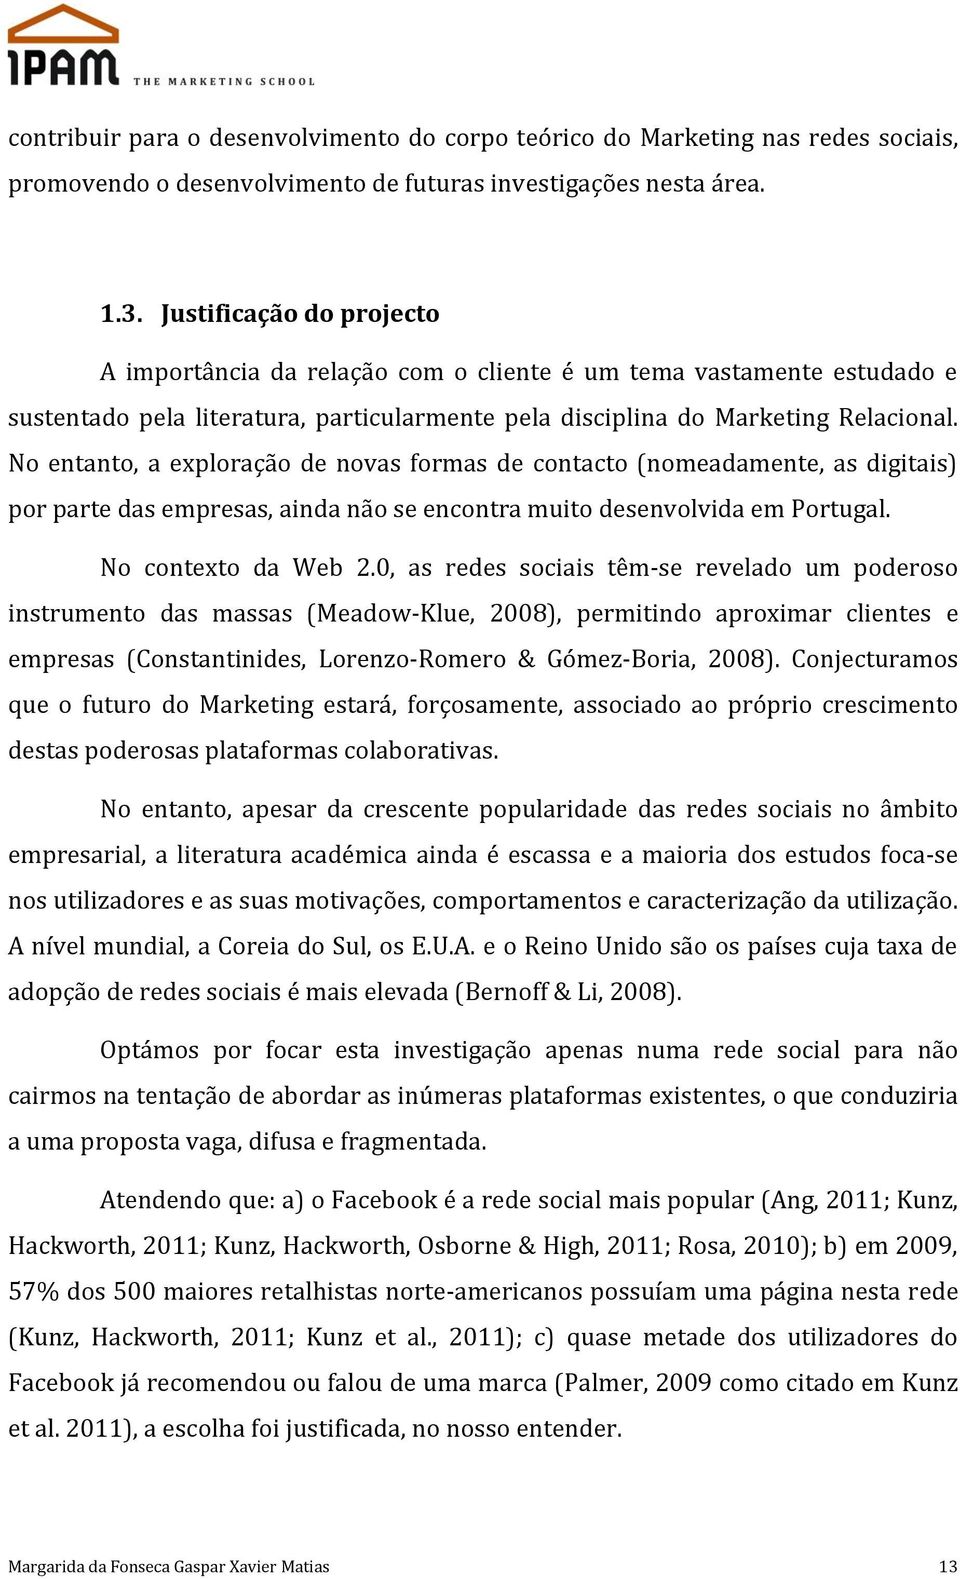 No entanto, a exploração de novas formas de contacto (nomeadamente, as digitais) por parte das empresas, ainda não se encontra muito desenvolvida em Portugal. No contexto da Web 2.